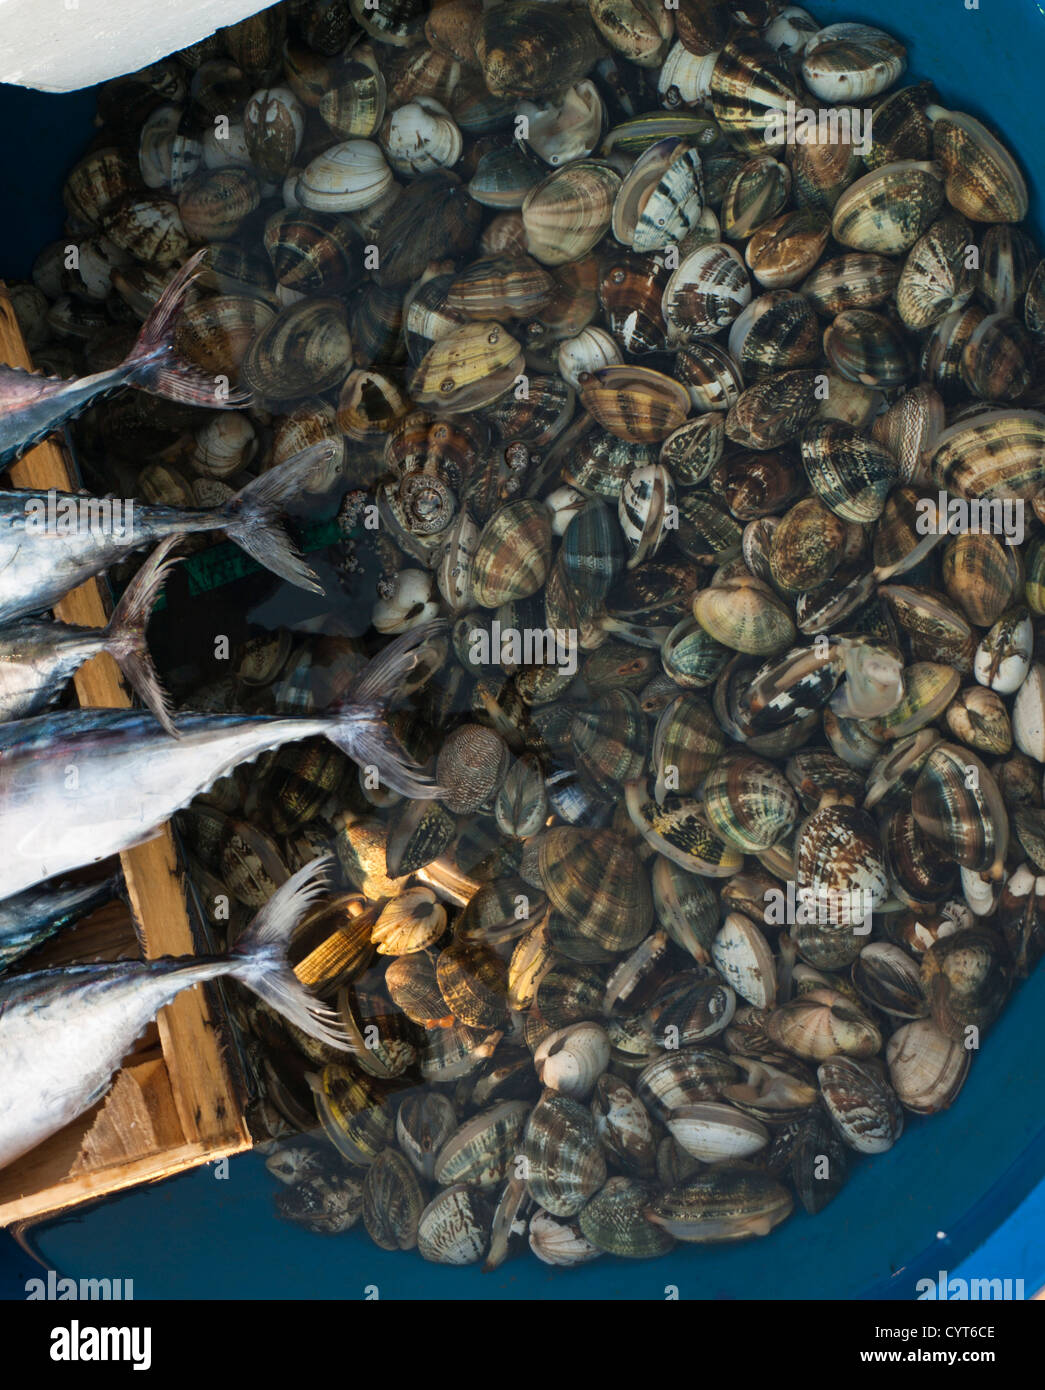 Morning fish market in Kumkapi Istanbul Turkey, fish straight off the boats, tails of Atlantic bonito and basin with seashells Stock Photo